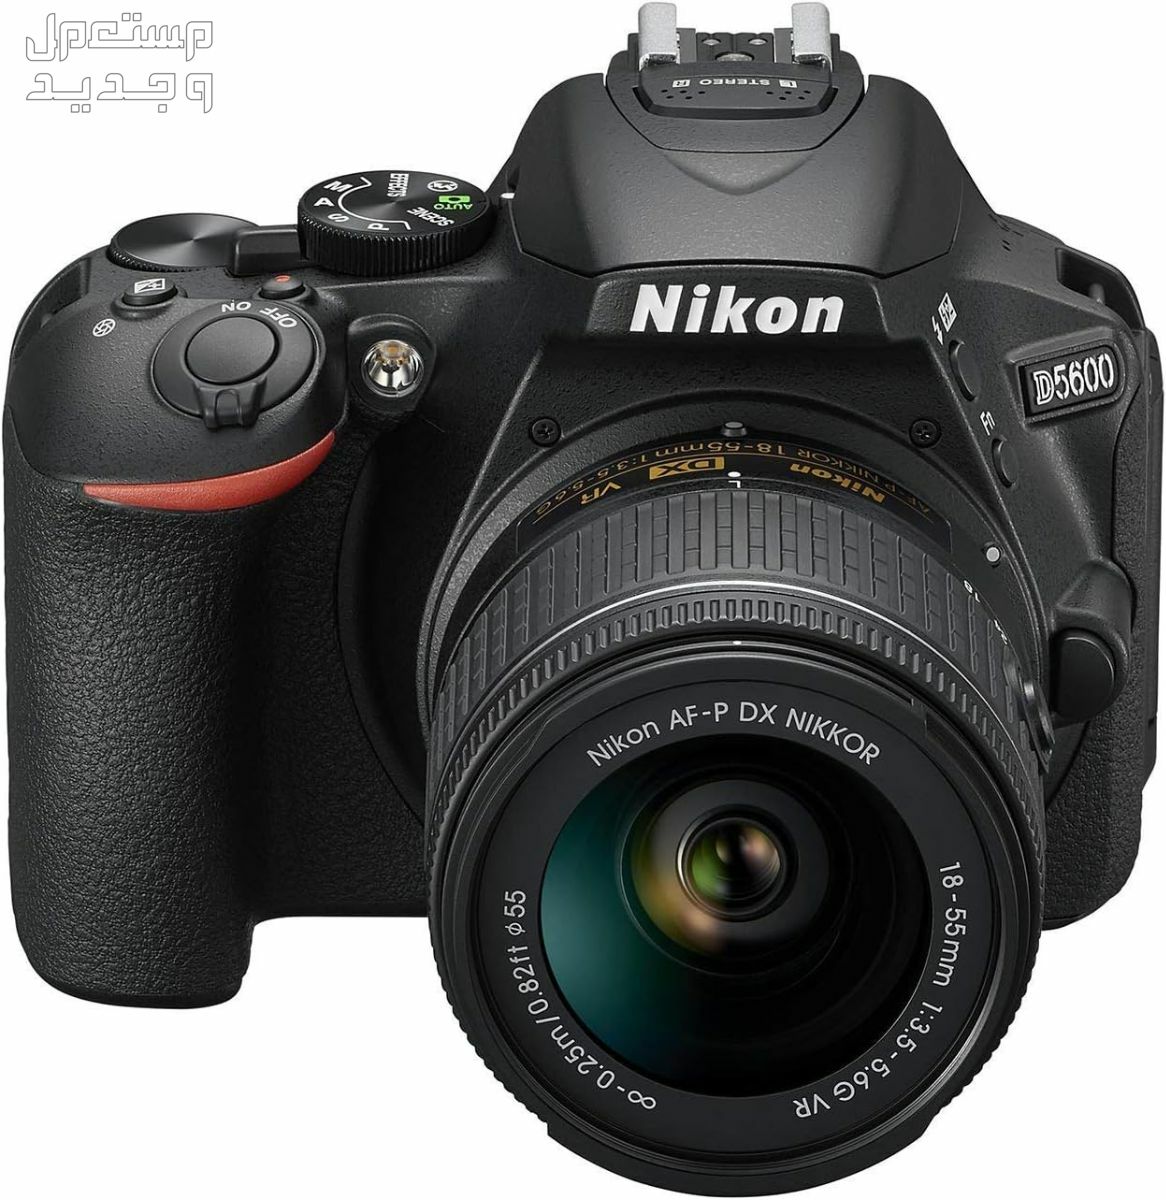 10 كاميرات تصوير ماركات عالمية بأسعار رخيصة في اليَمَن سعر كاميرا Nikon D5600